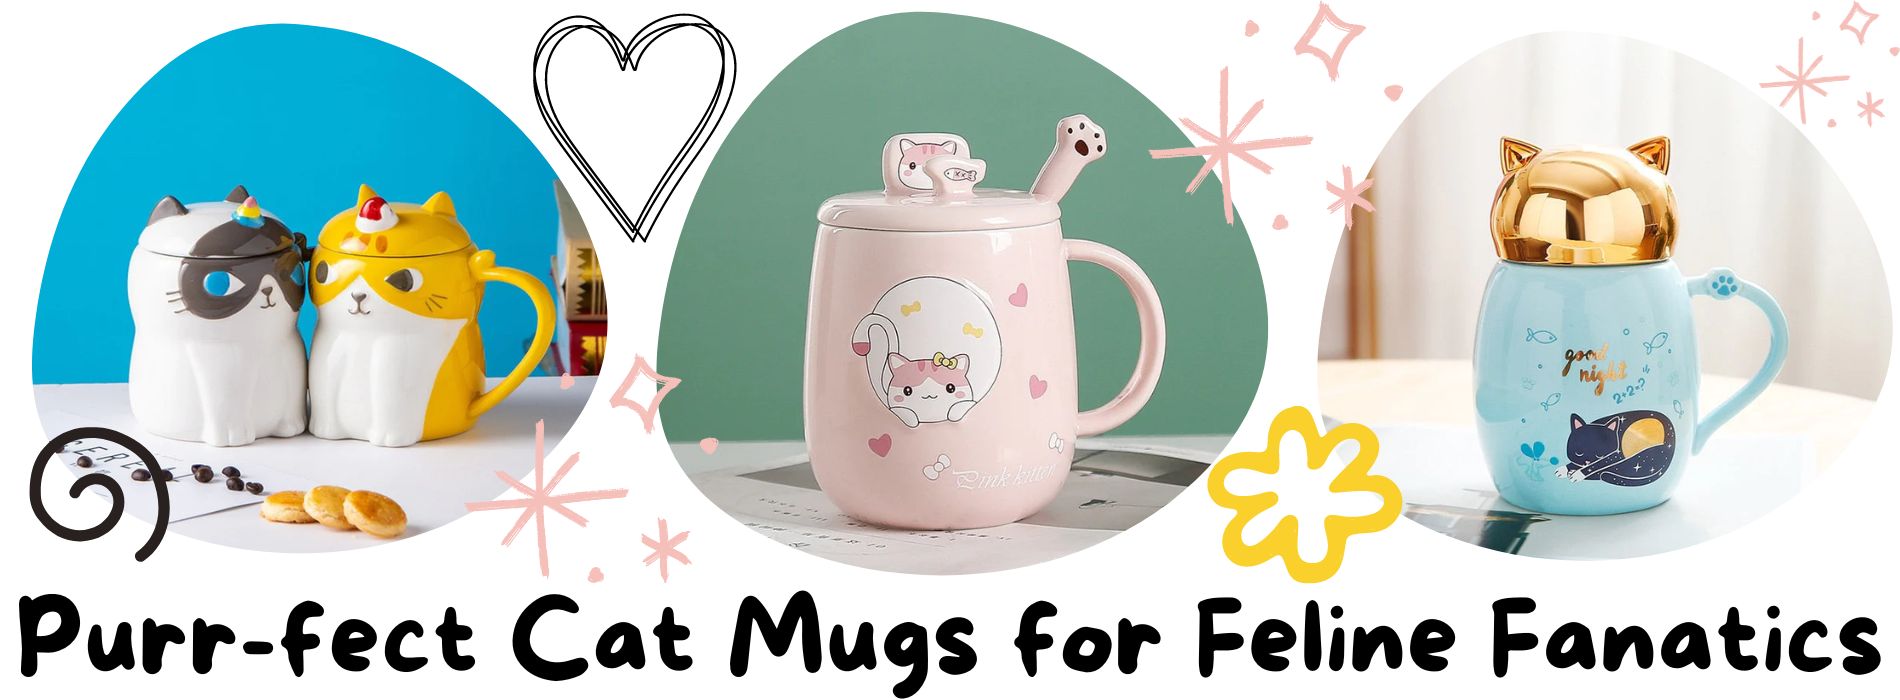 cat-mugs